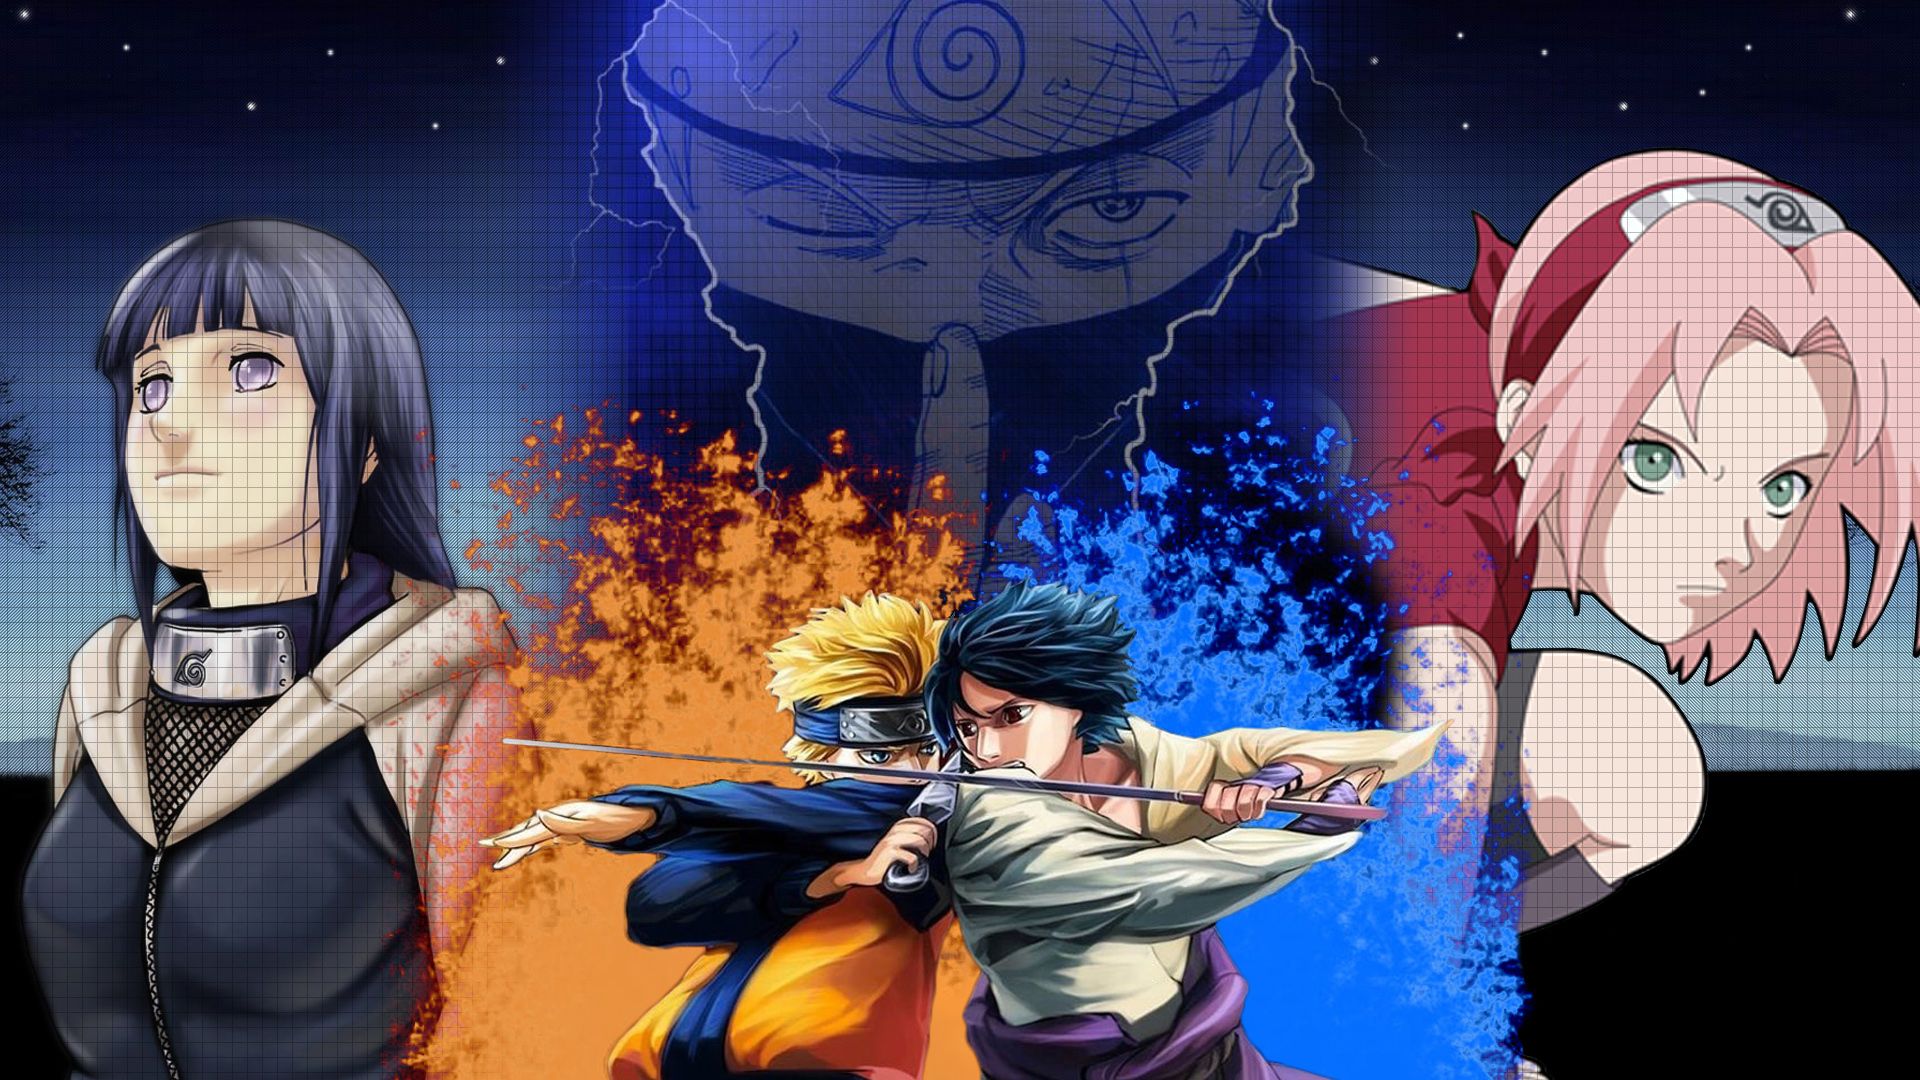 Free download Hinata Naruto Sasuke Sakura Kakashi Wallpaper